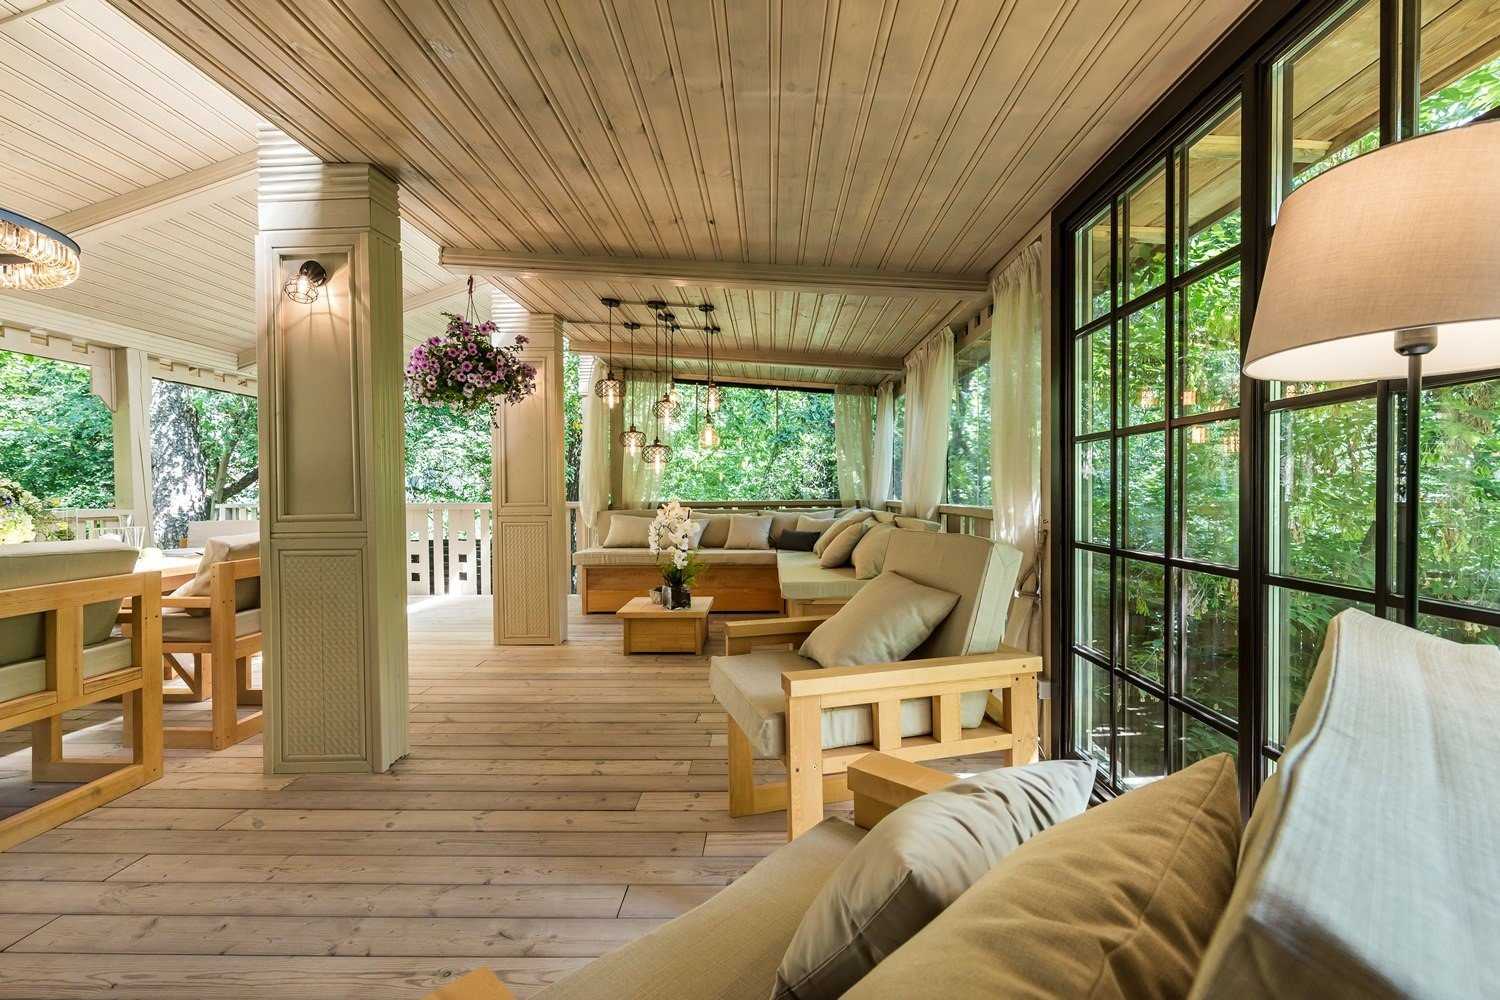 Красивый дизайн веранды в частном доме: 45 стильных идей оформления